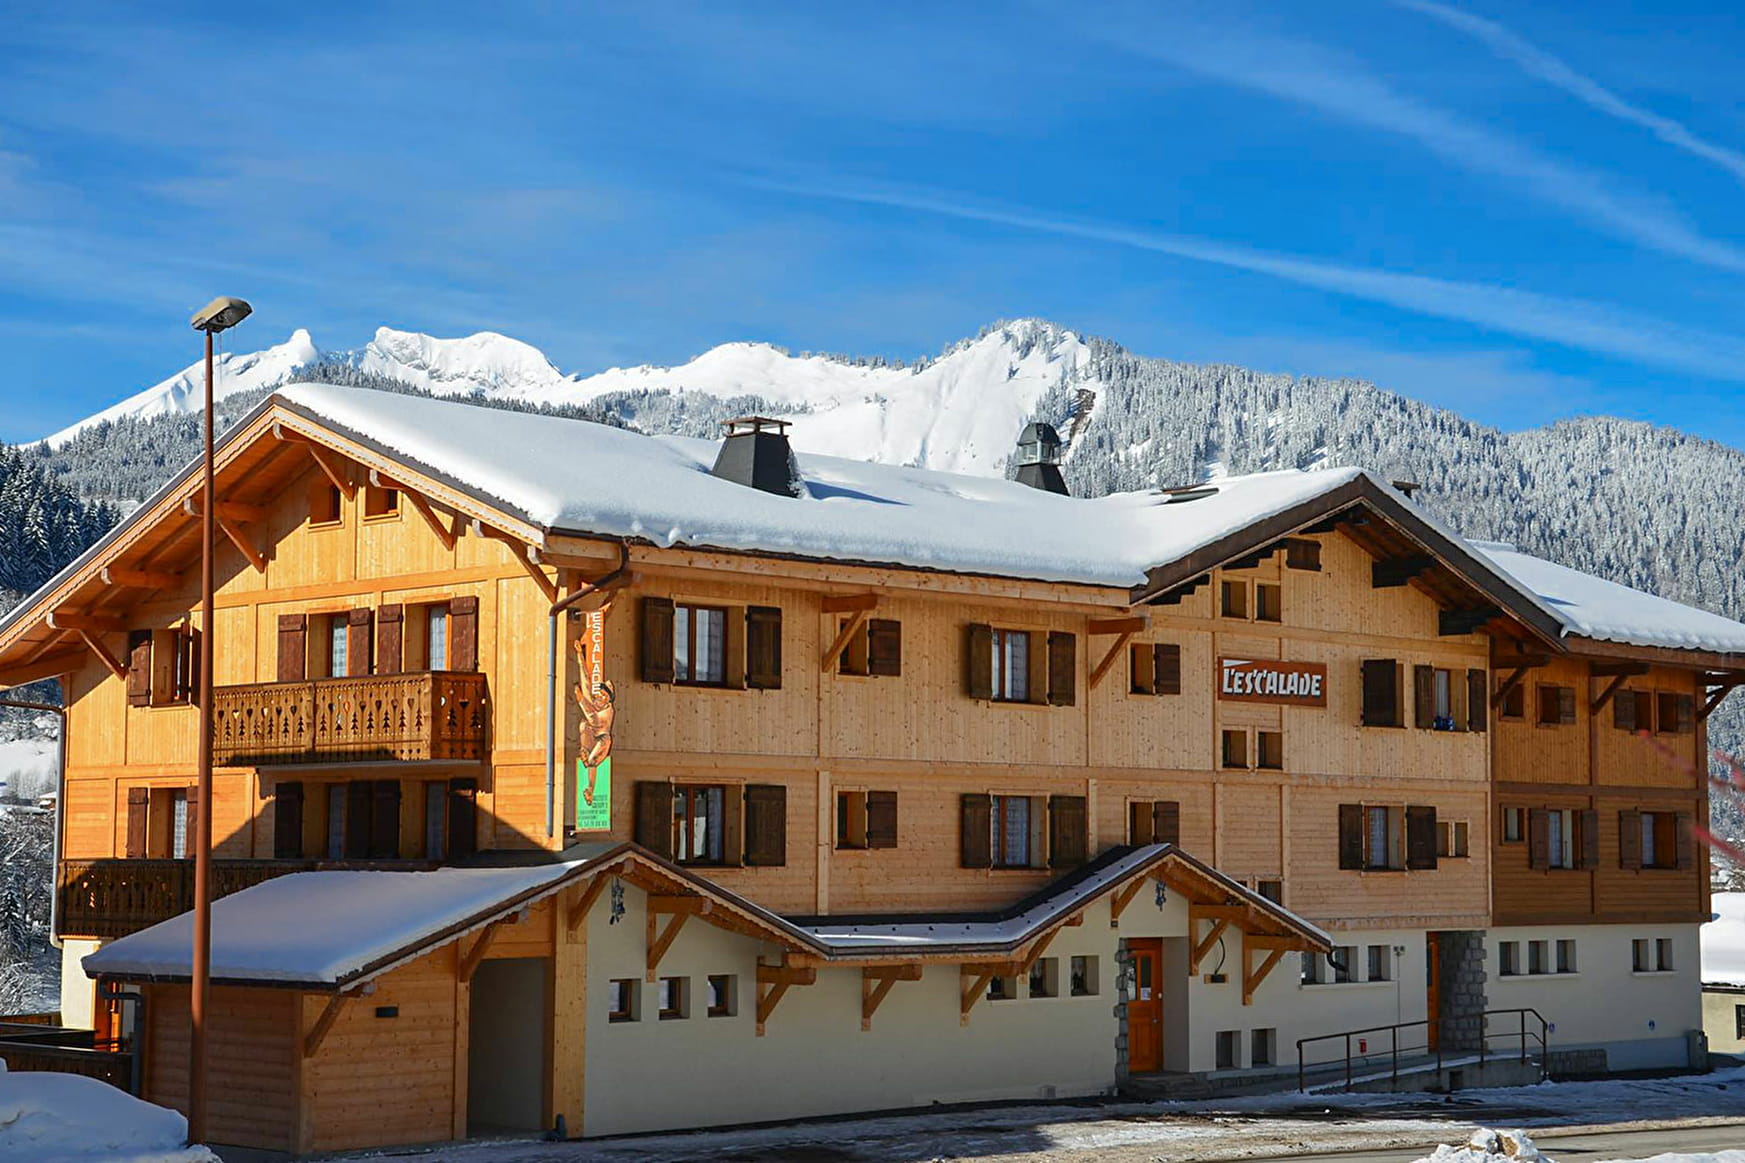 Centre de vacances L'Escalade | Savoie Mont Blanc (Savoie et Haute Savoie) - Alpes